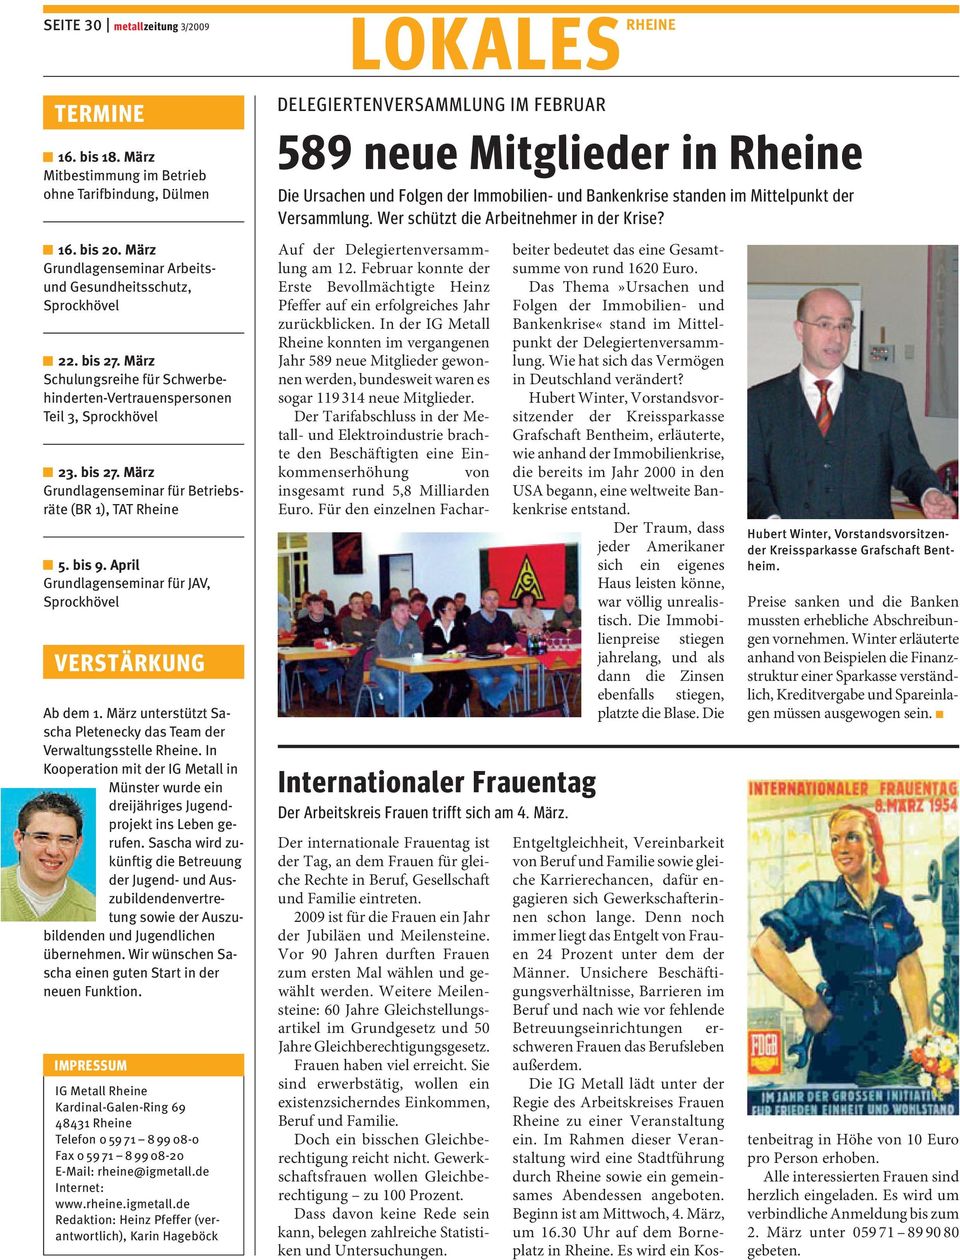 April Grundlagenseminar für JAV, Sprockhövel VERSTÄRKUNG Ab dem 1. März unterstützt Sascha Pletenecky das Team der Verwaltungsstelle Rheine.